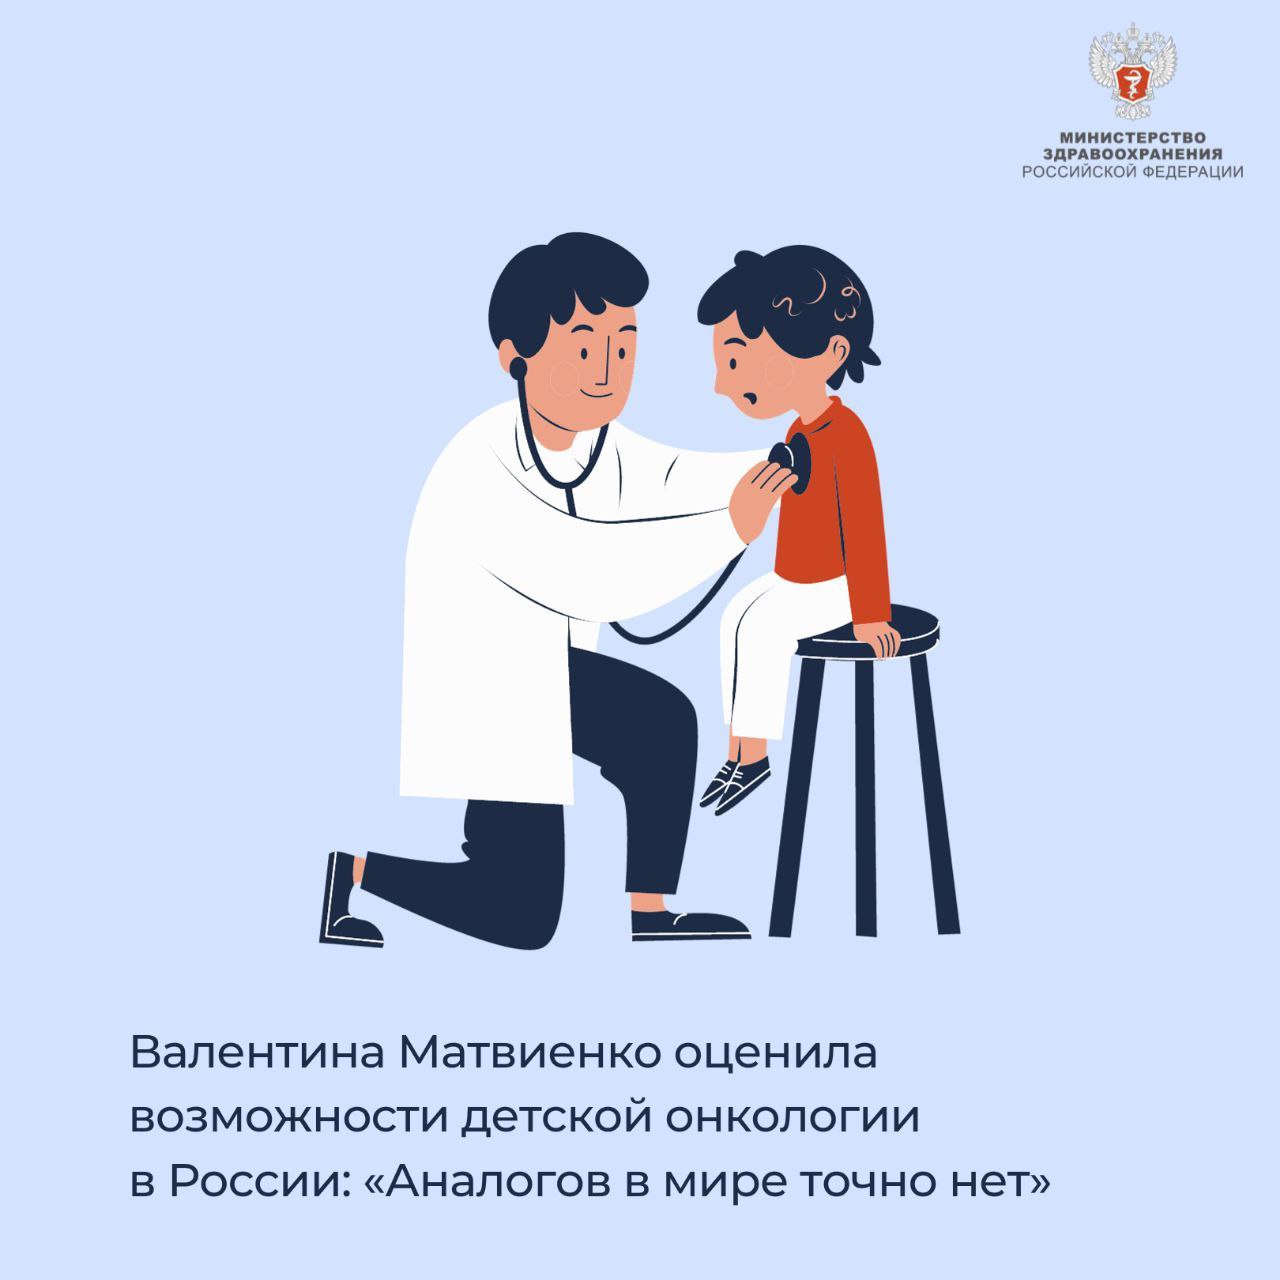 Возможности детской онкологии в России